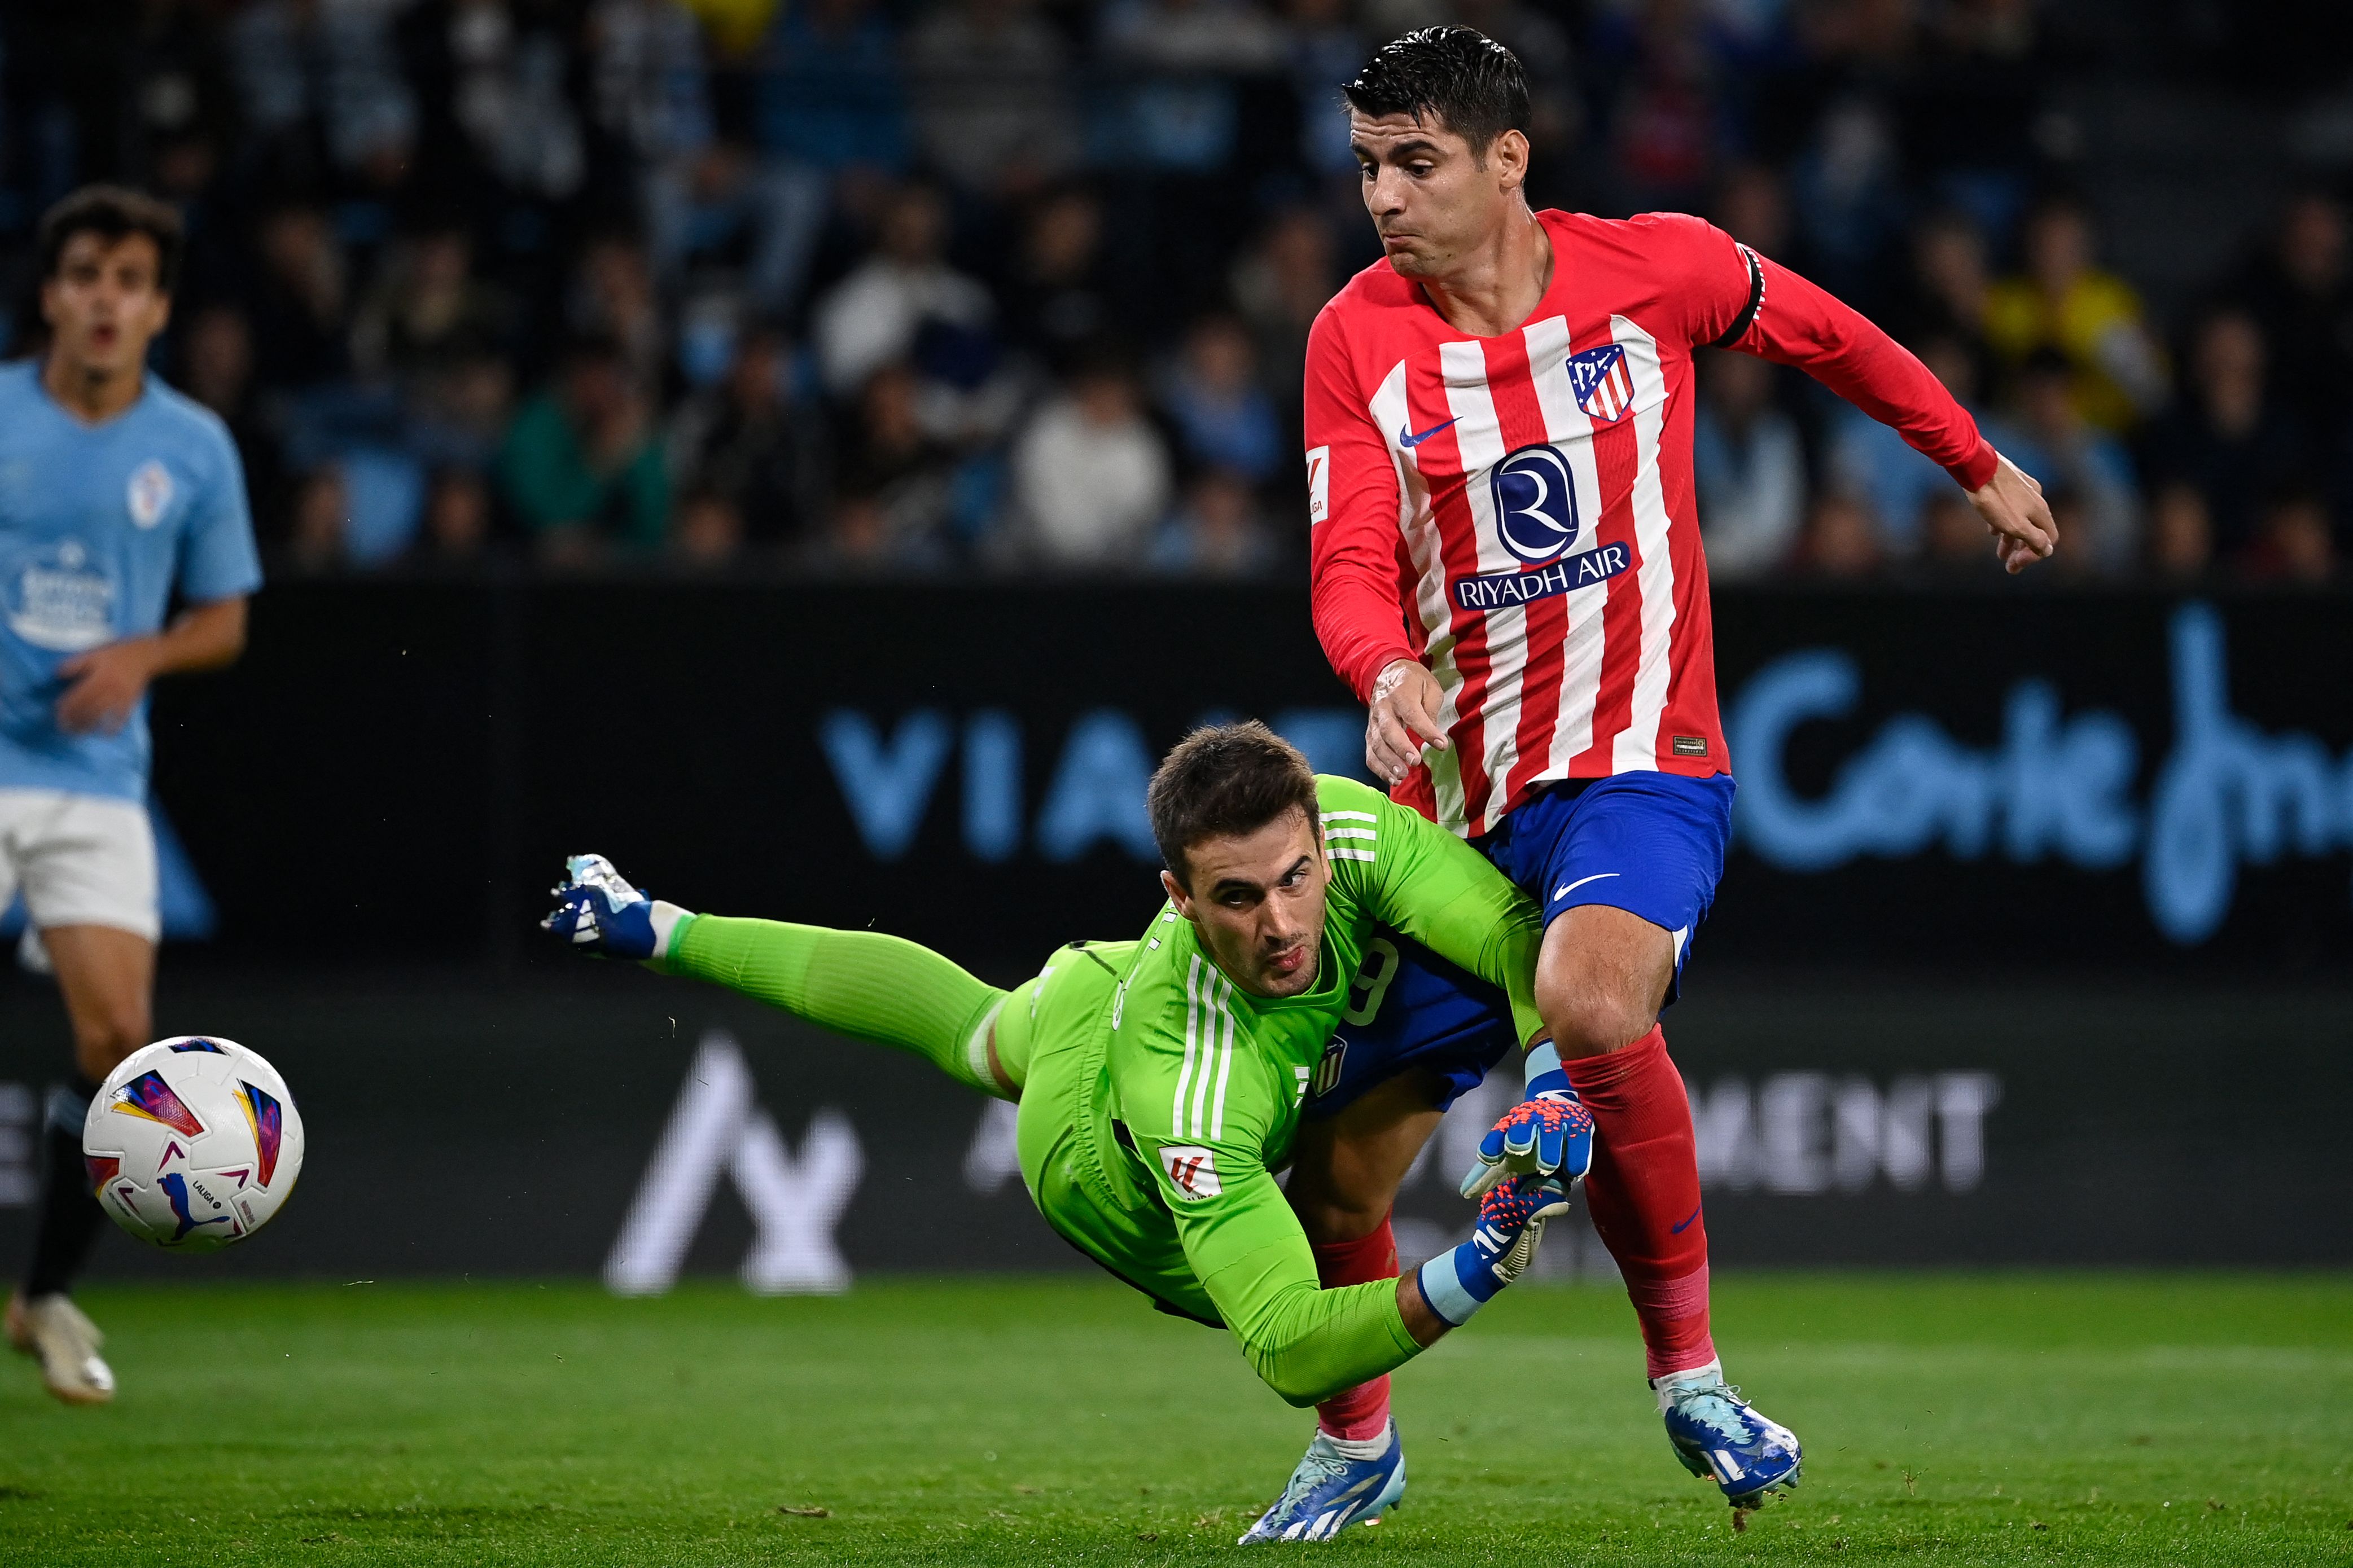 “El penalti de Villar es claro y es roja porque no disputa el balón”